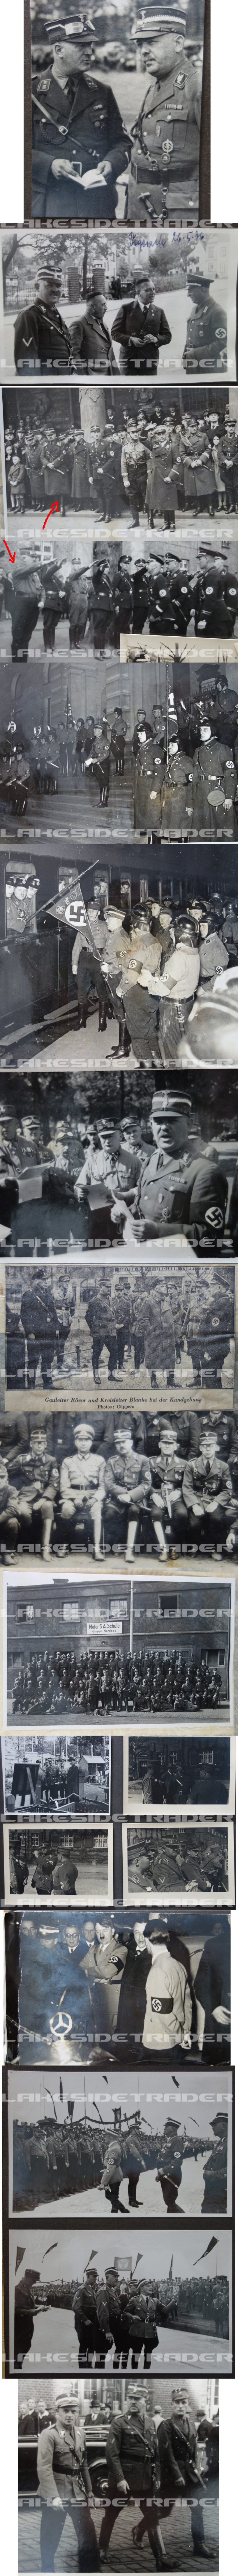 General Wilhelm Uhde NSKK-Brigadeführer Photo Albums